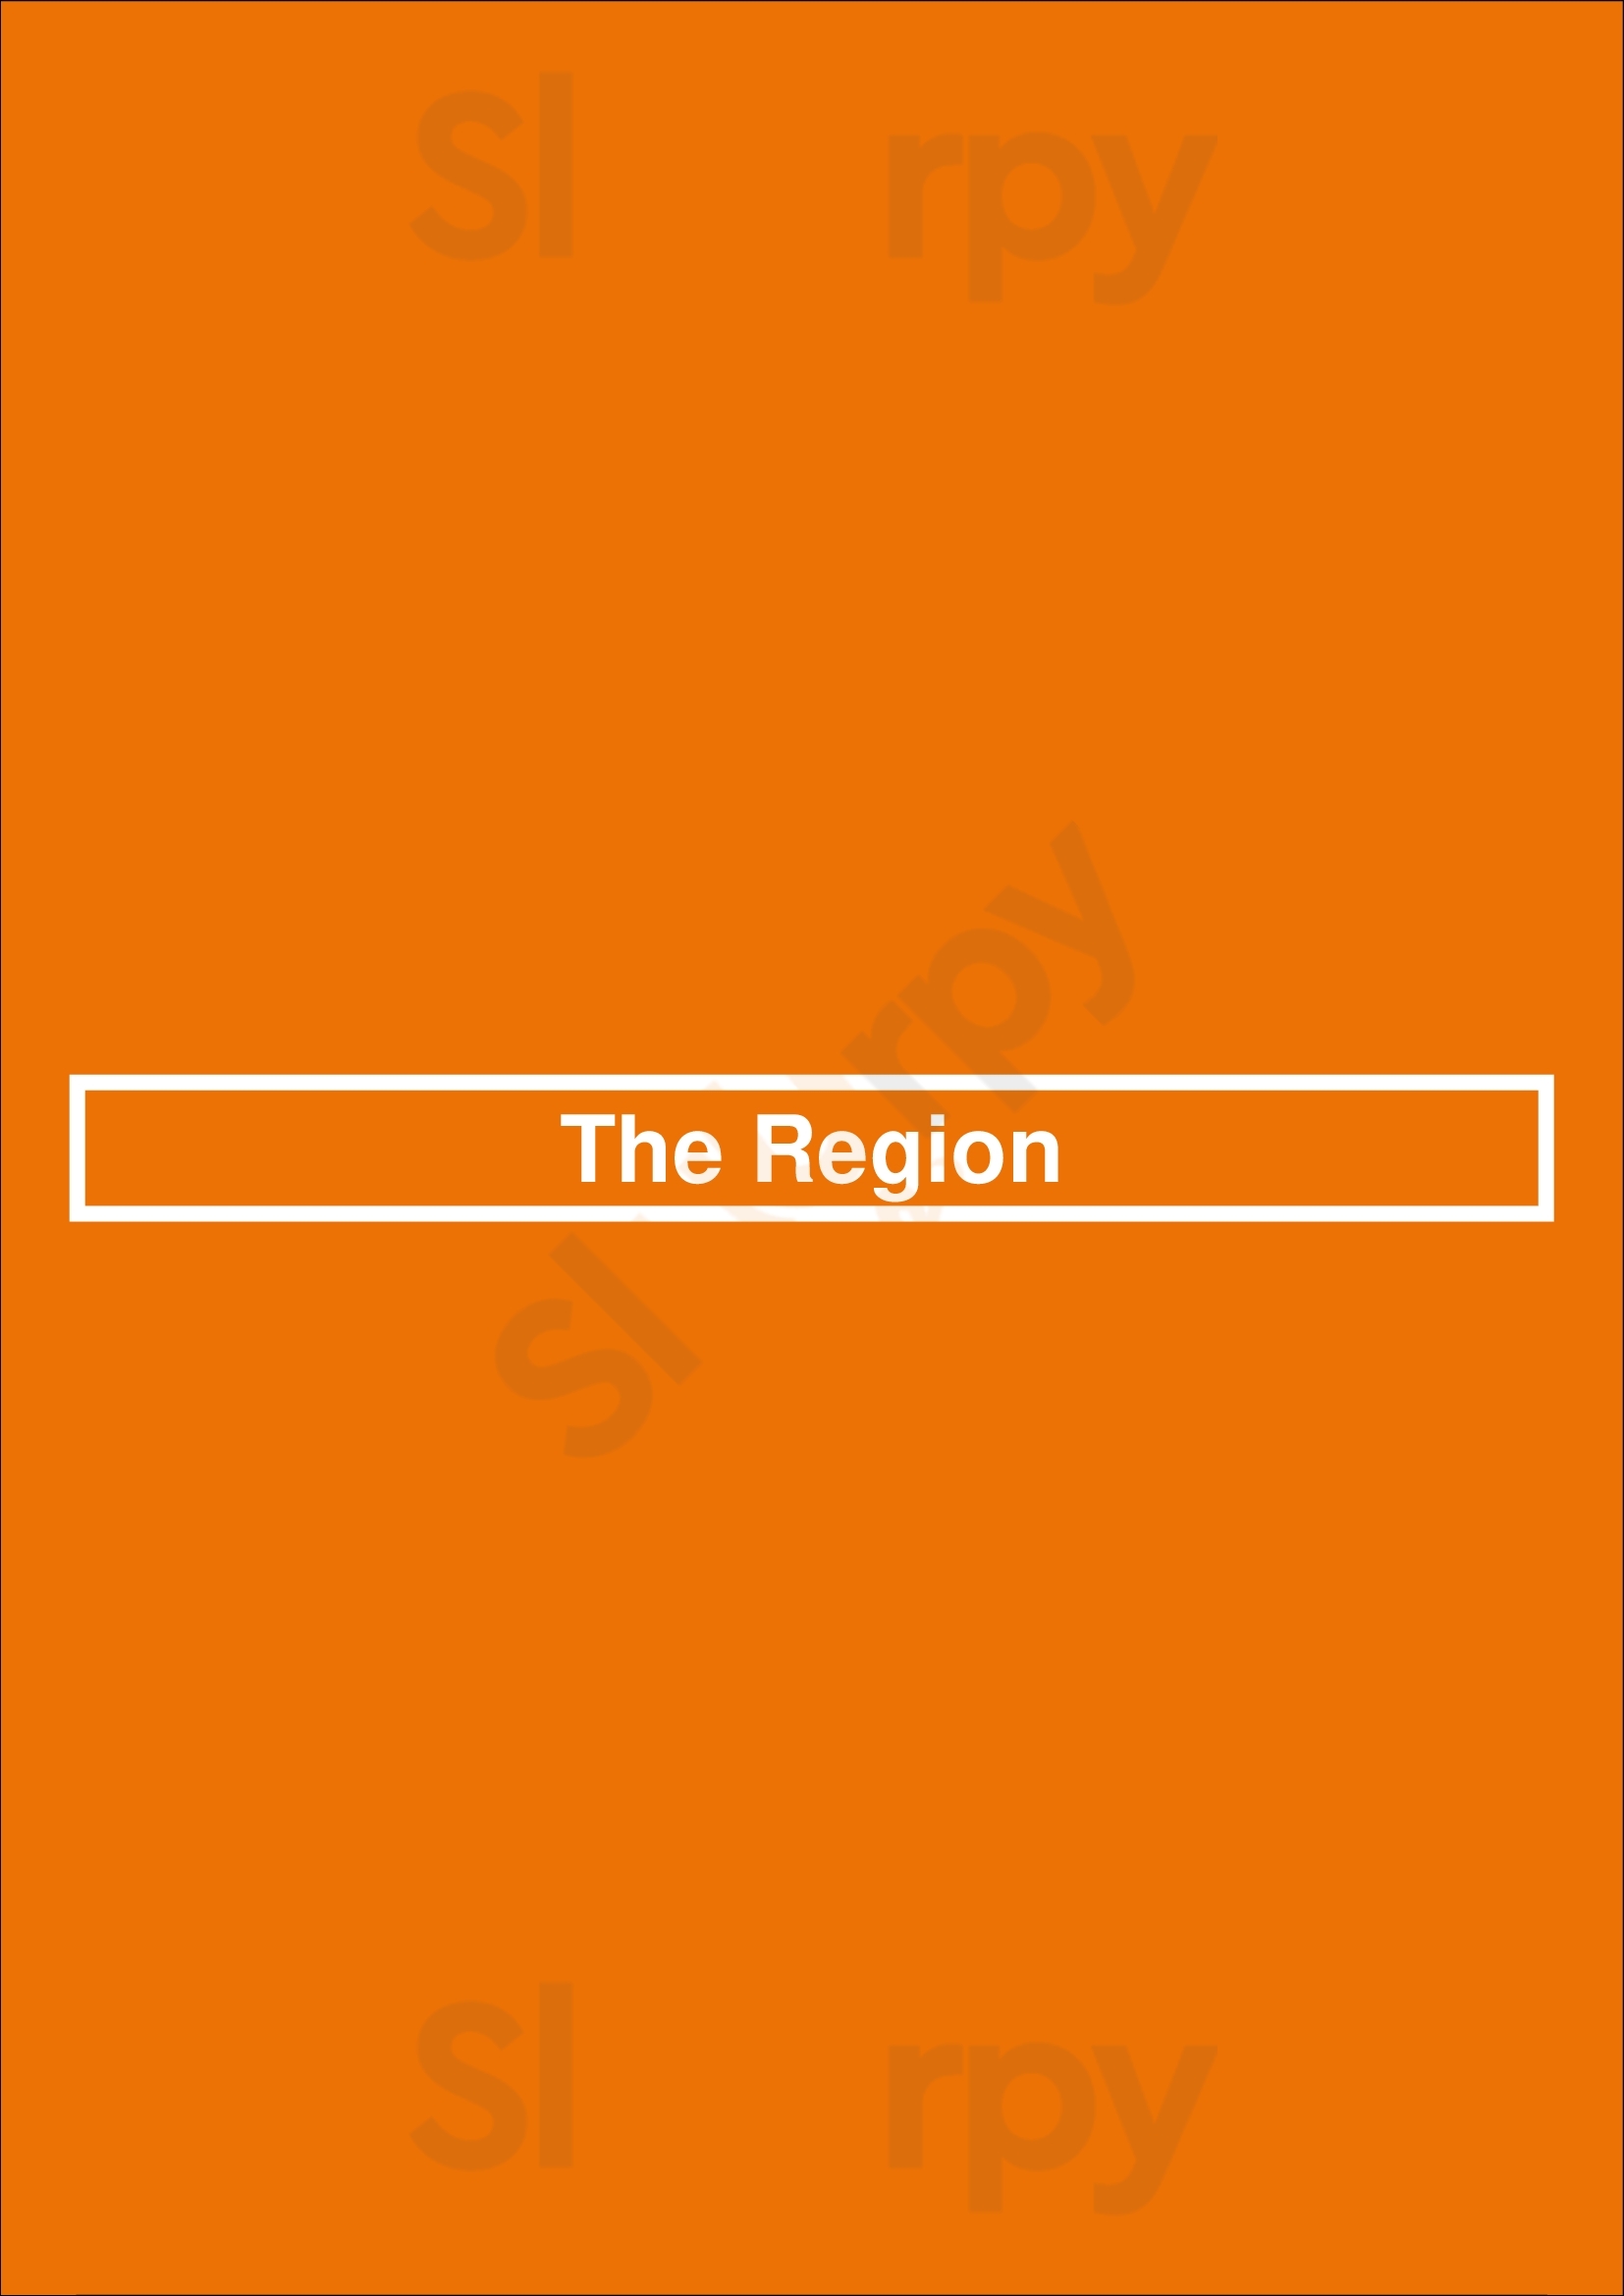 The Region Chicago Menu - 1